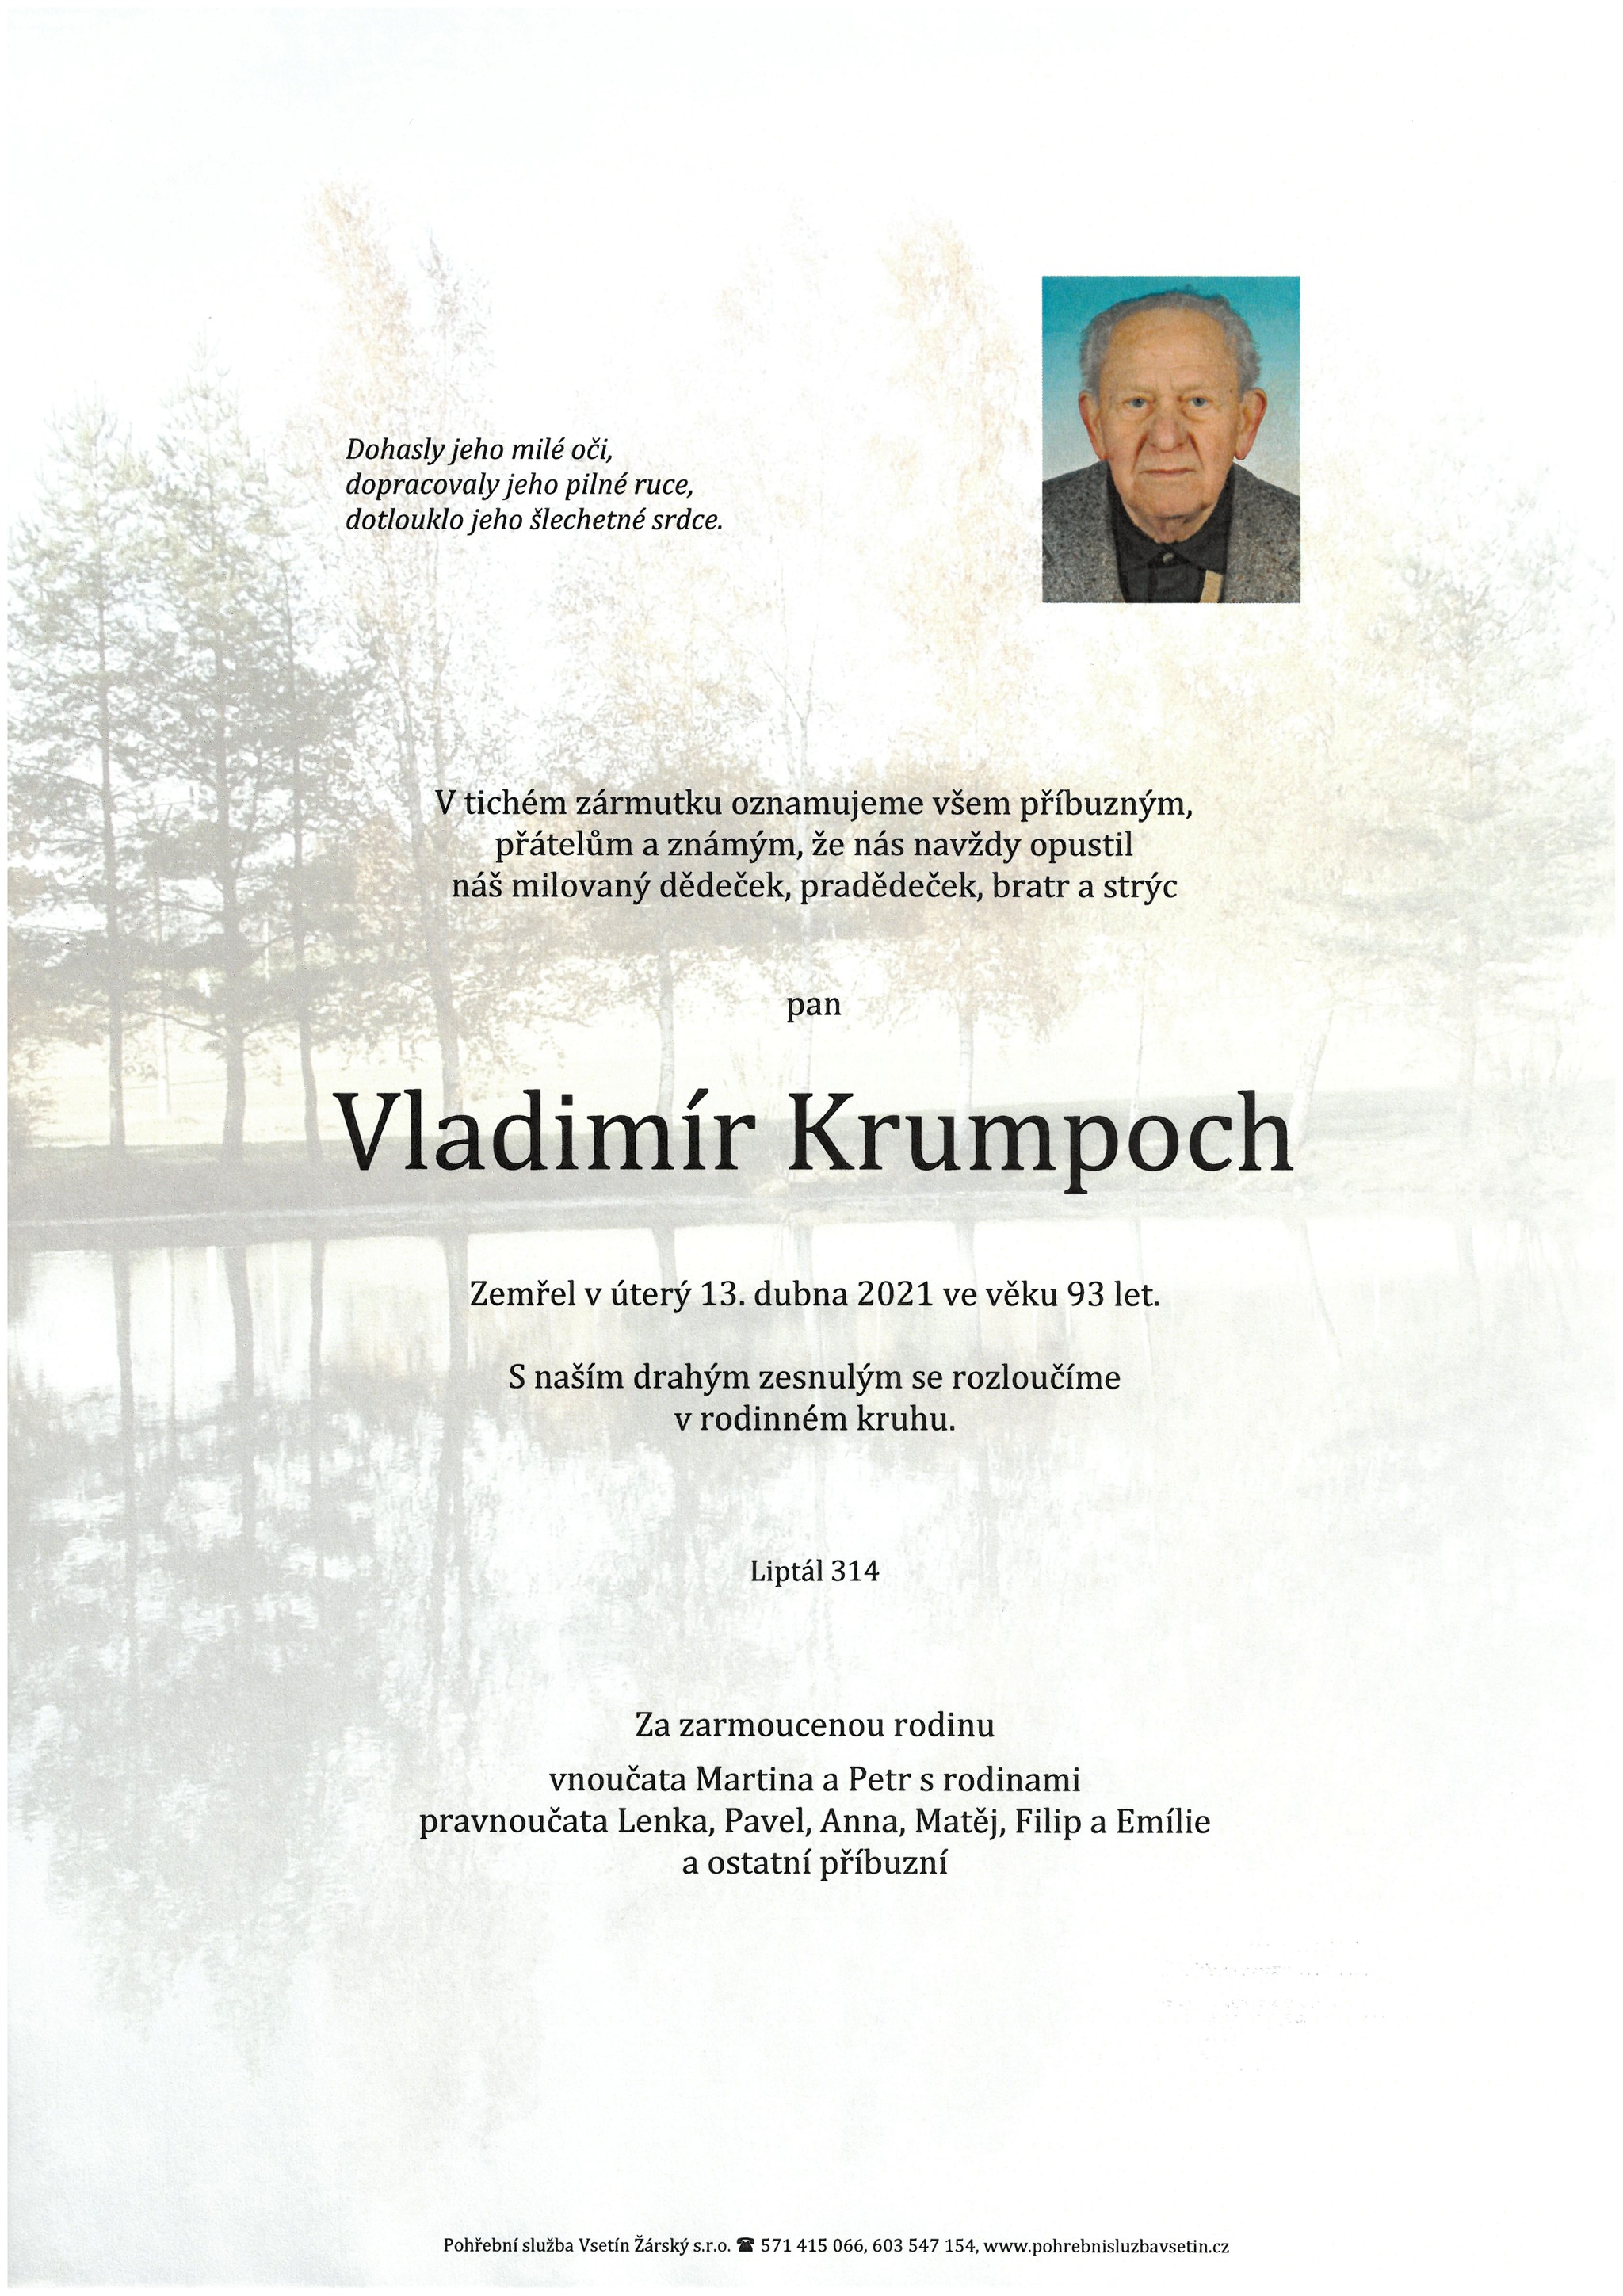 Vladimír Krumpoch